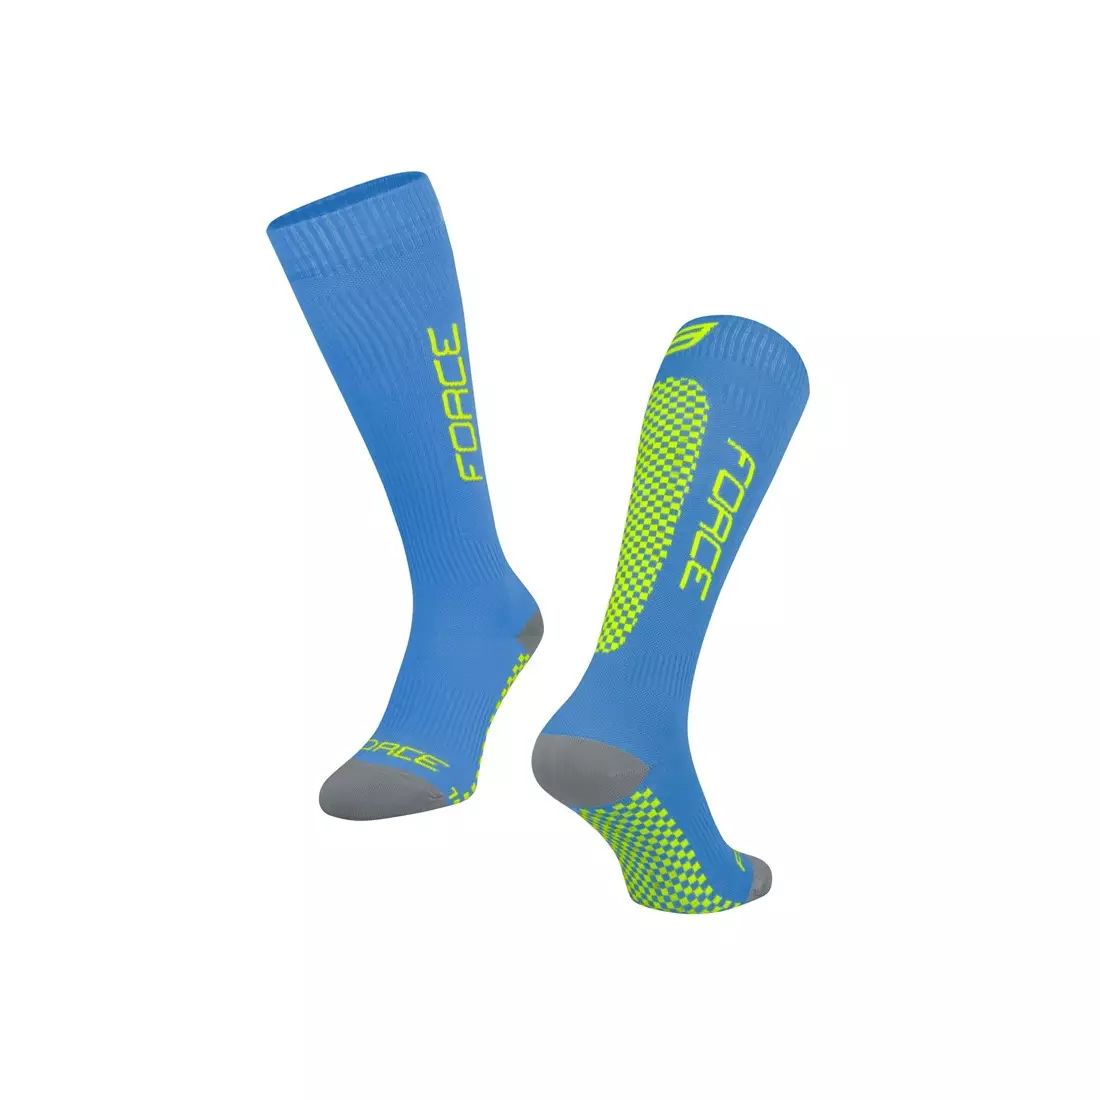 FORCE TESSERA COMPRESSION kompressziós zokni, kék és fluor